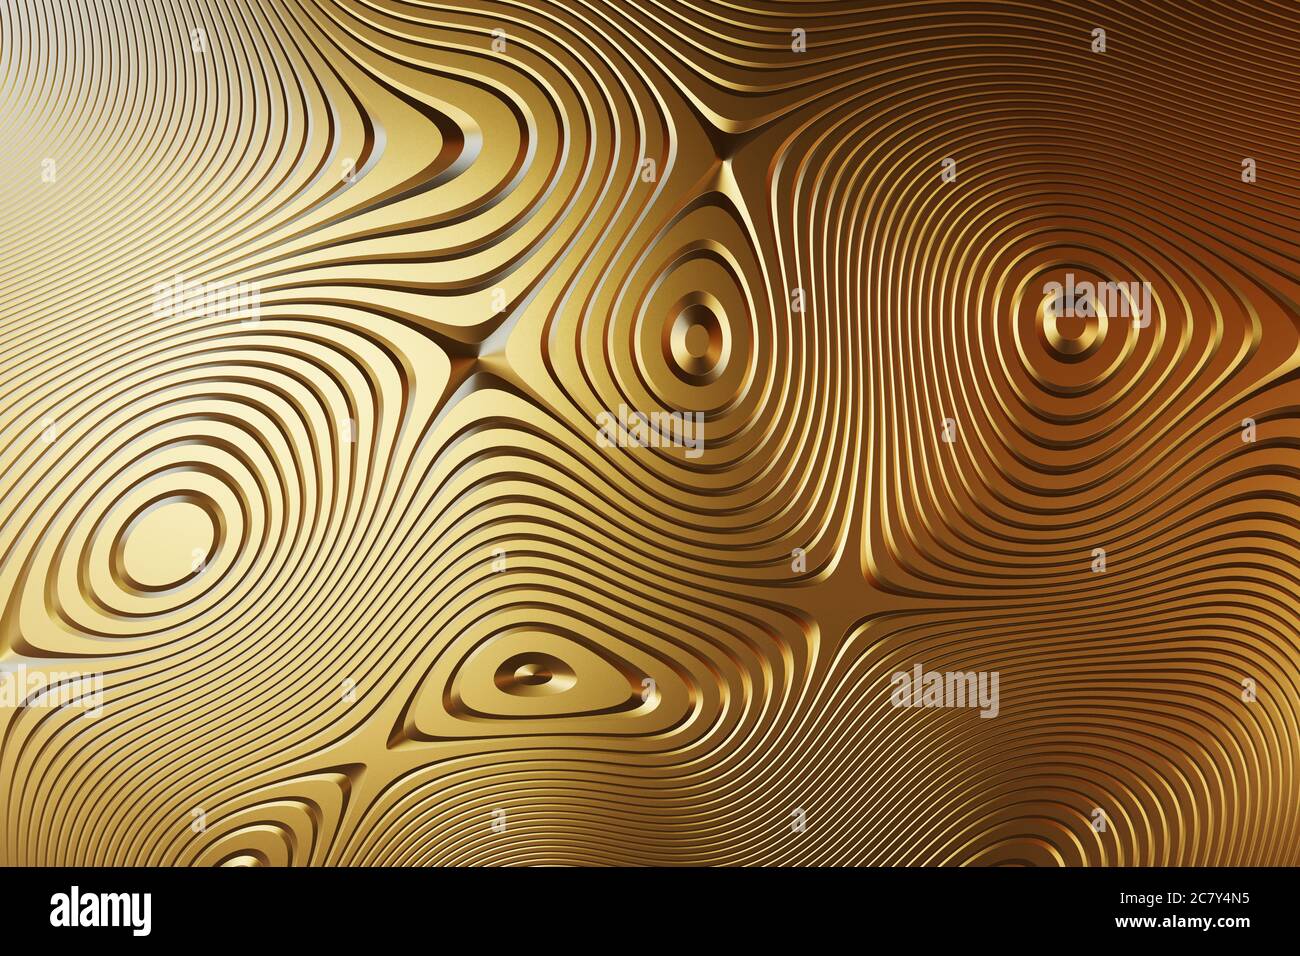 Motivo giallo dorato, forme geometriche astratte su sfondo testurizzato.Illustrazione 3d. Foto Stock